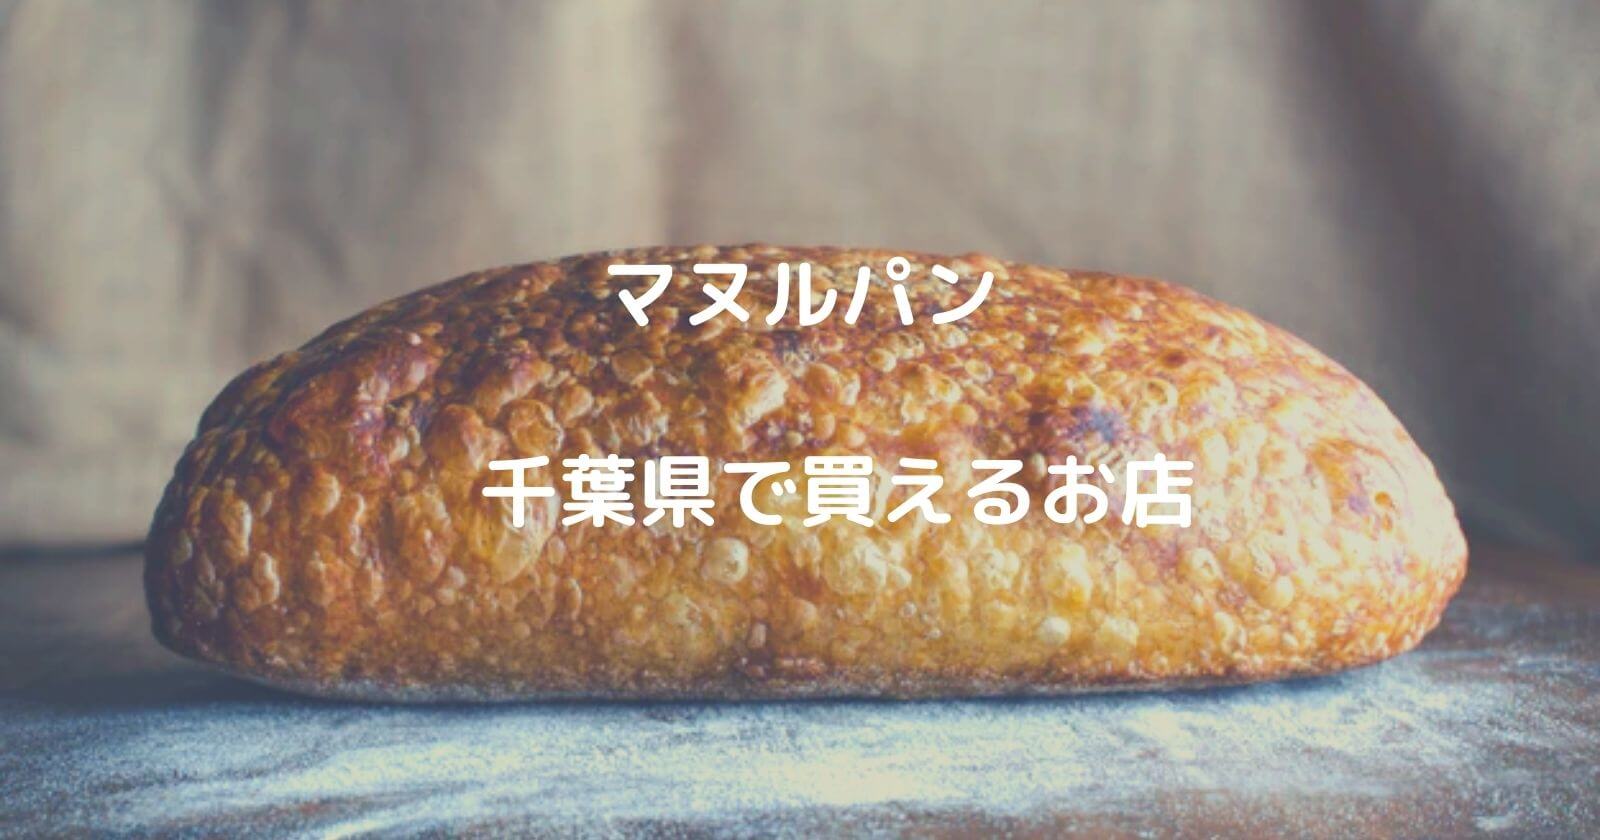 千葉県でマヌルパンが買えるお店